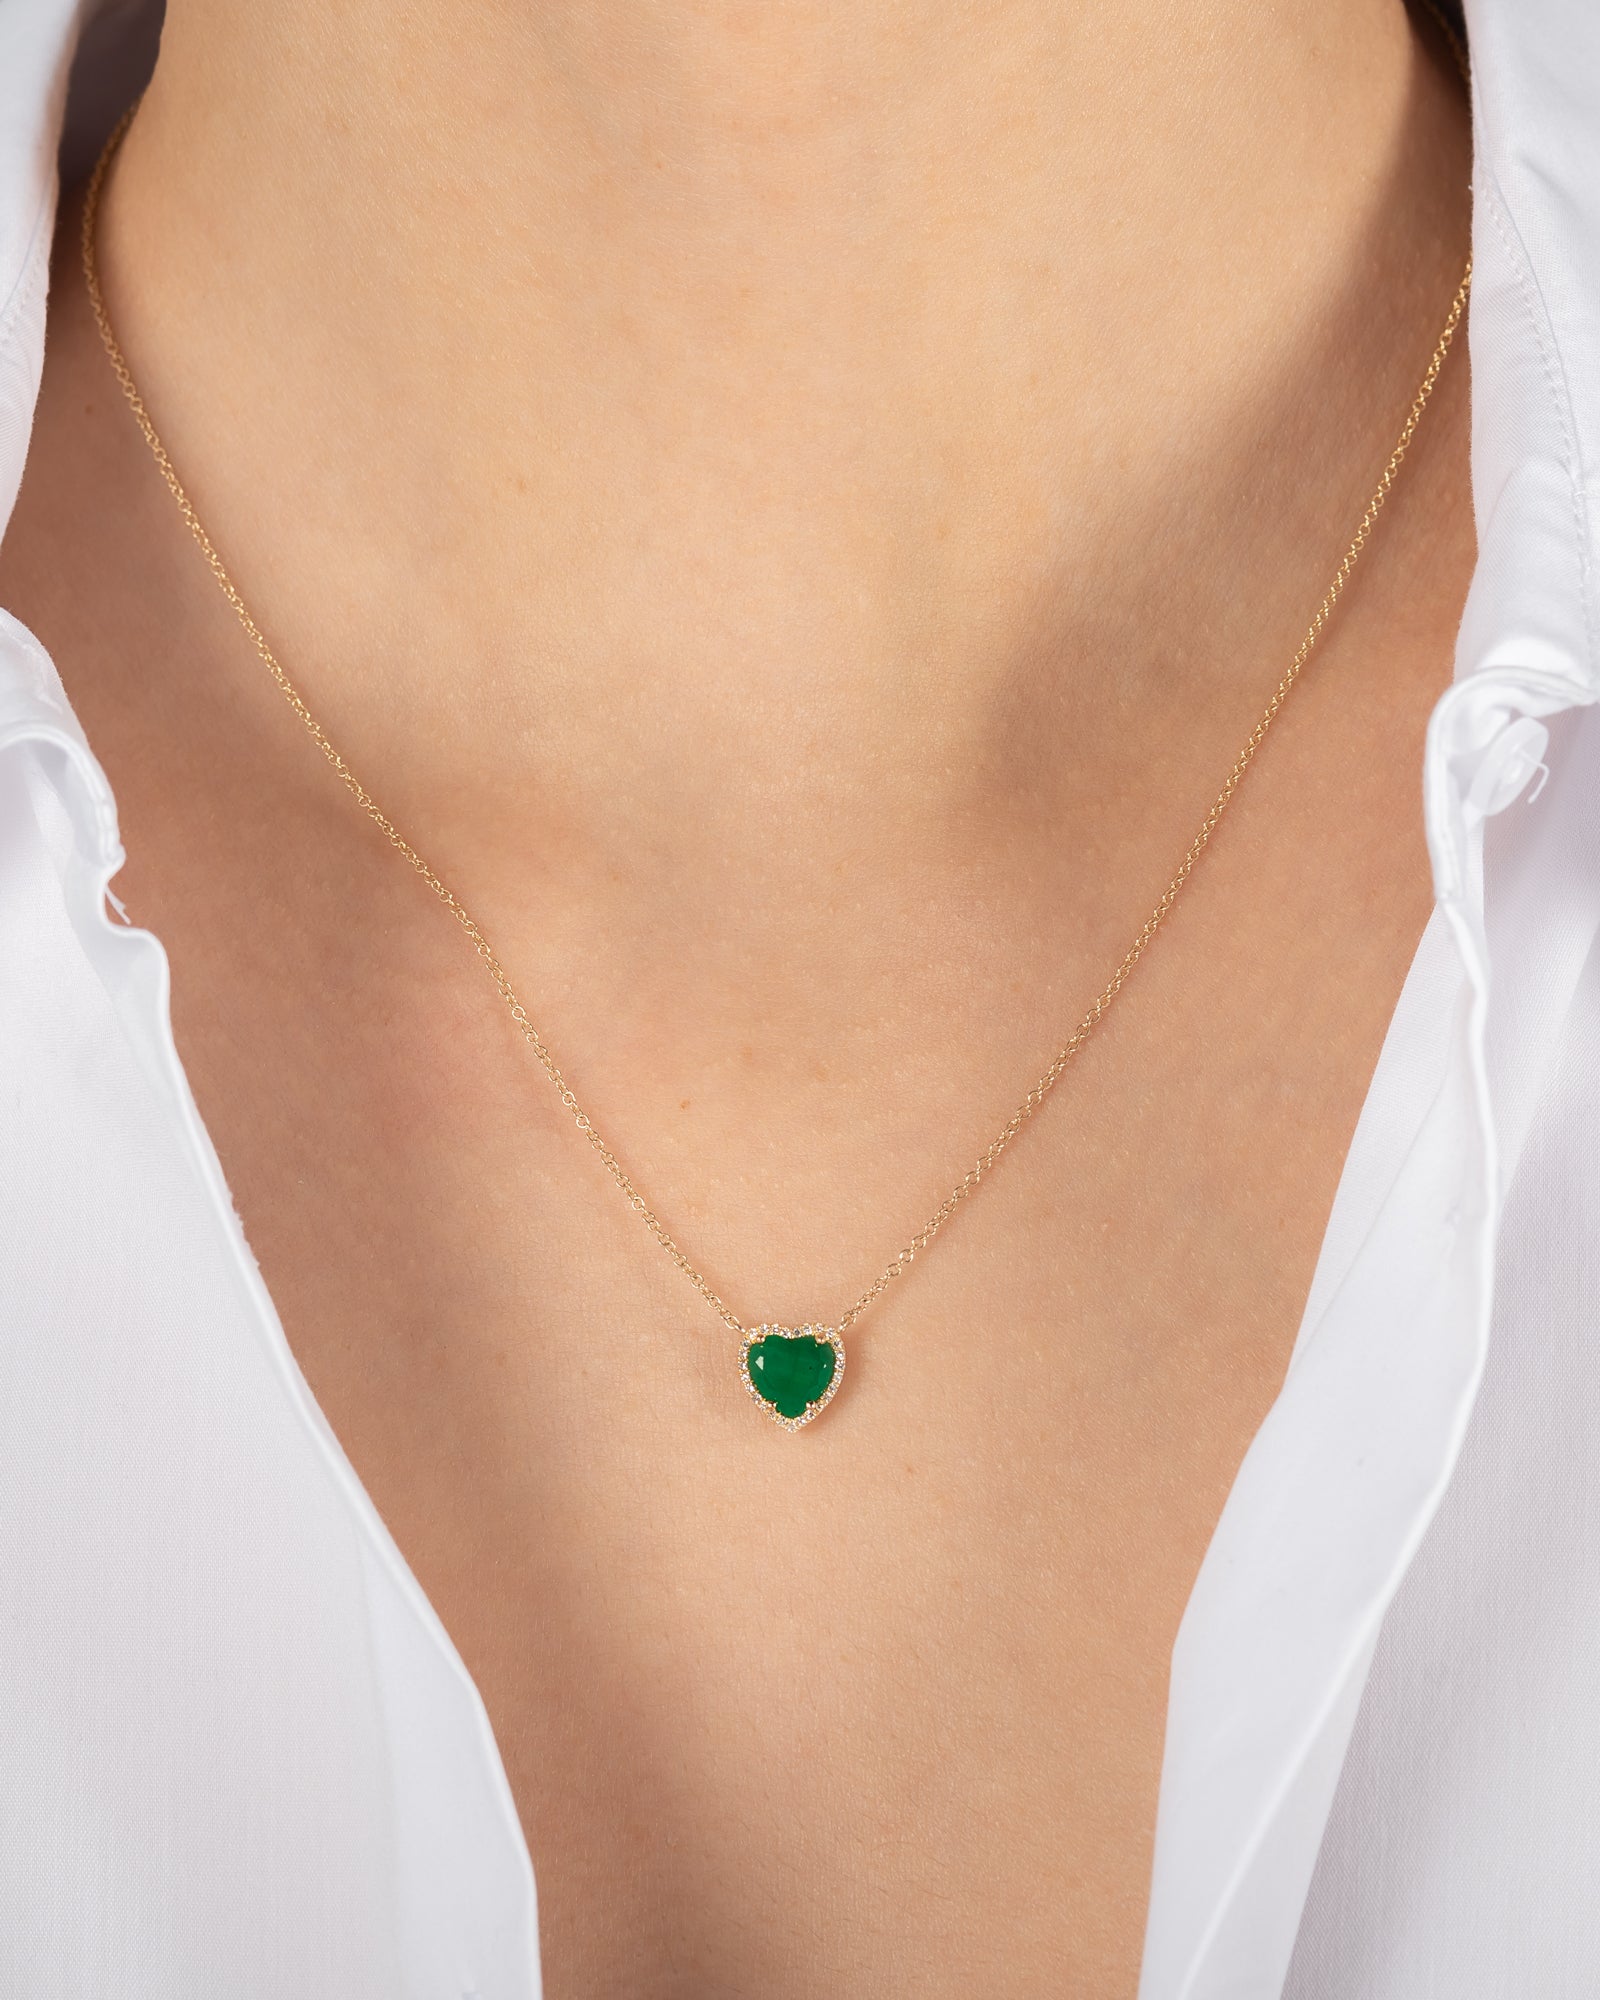 How To Wear Heart Shaped Jewelry | Phoenix Roze